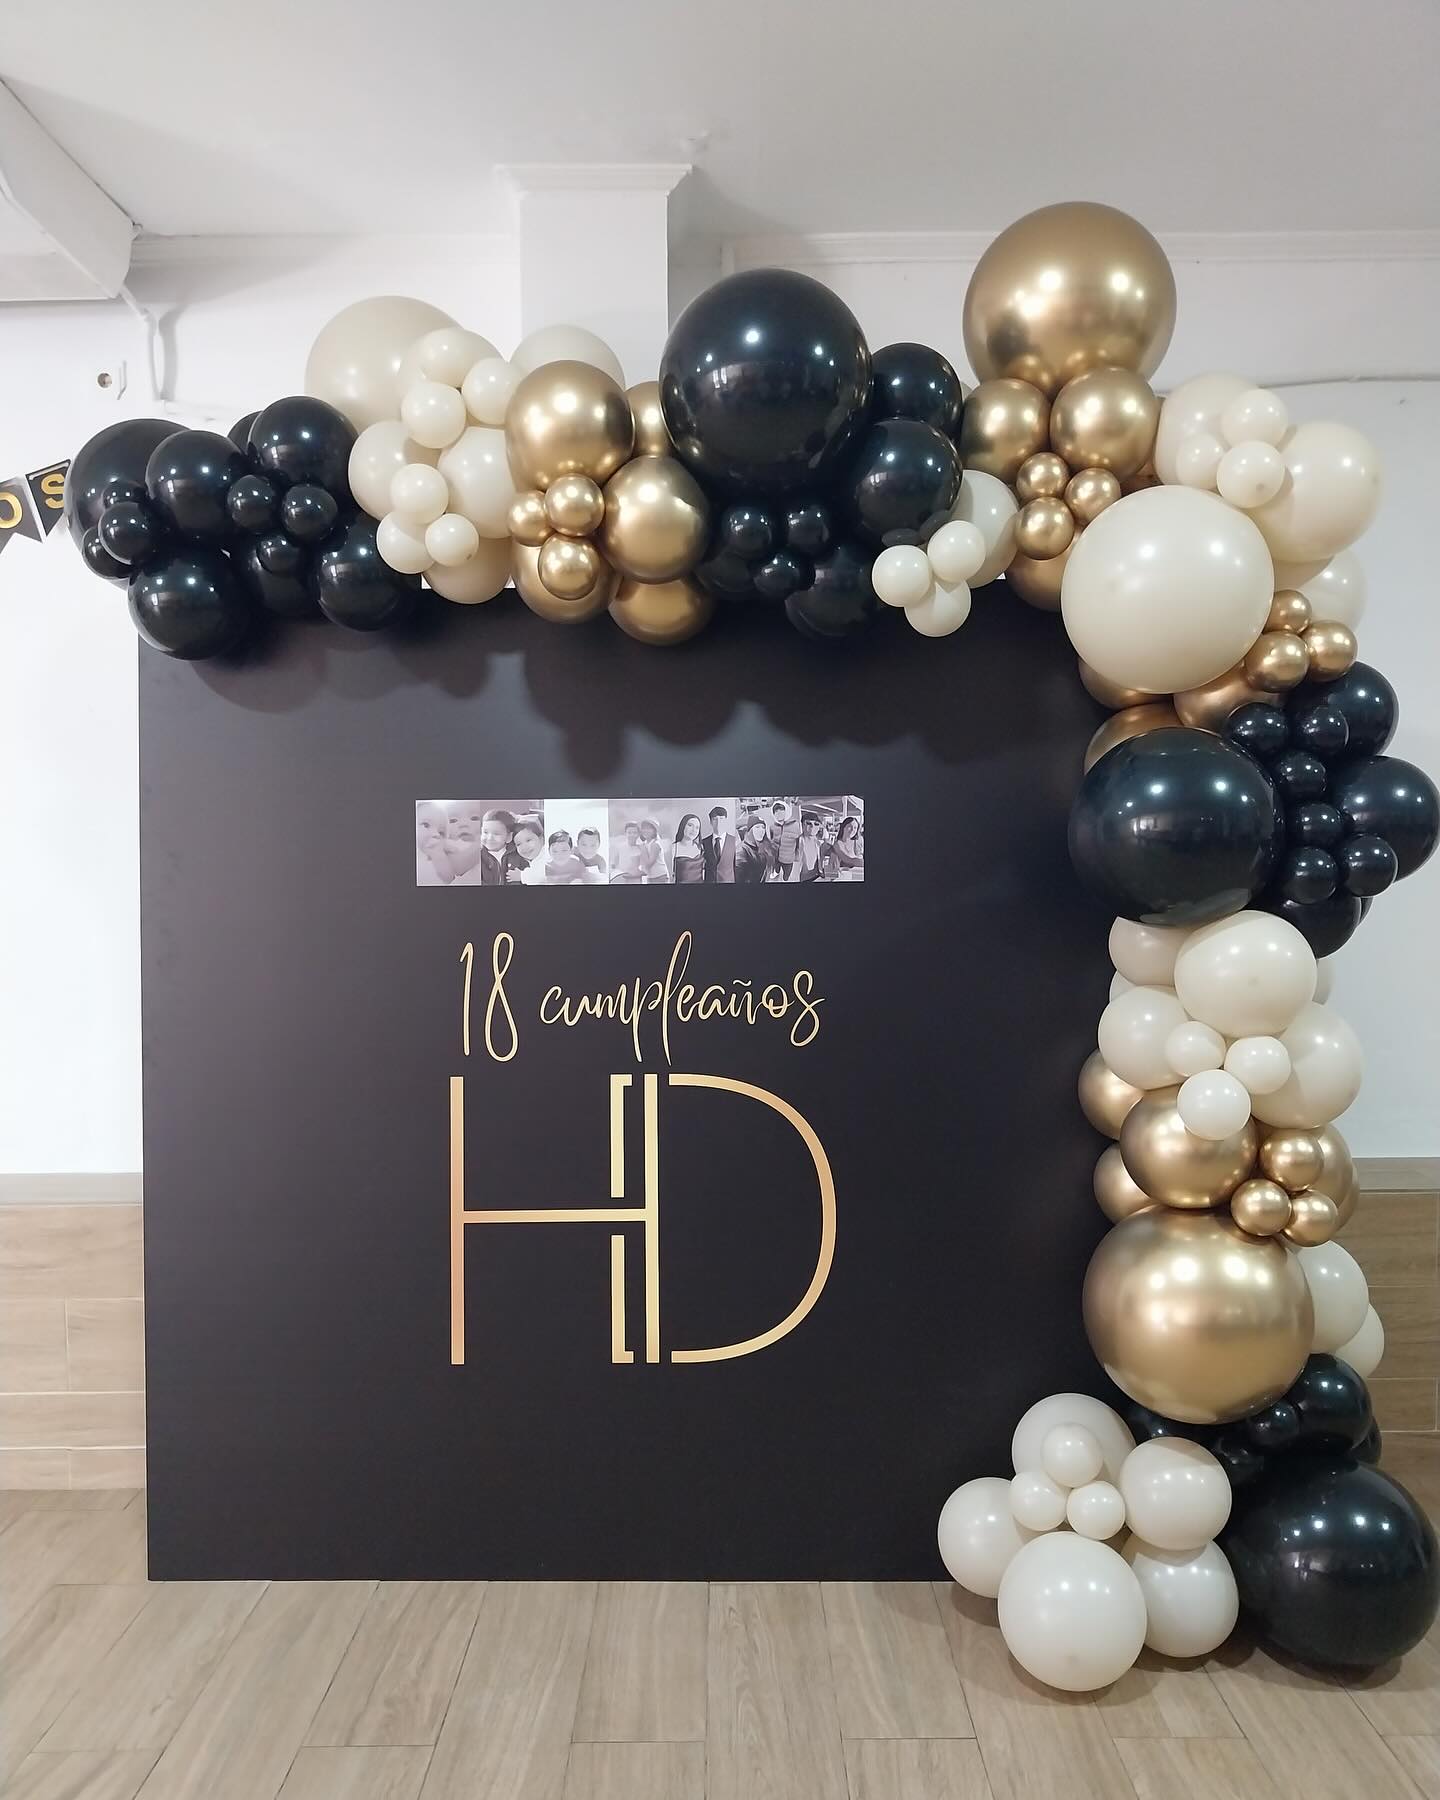 Los 18 cumpleaños siguen estando en nuestro candelero de decoraciones con globos...